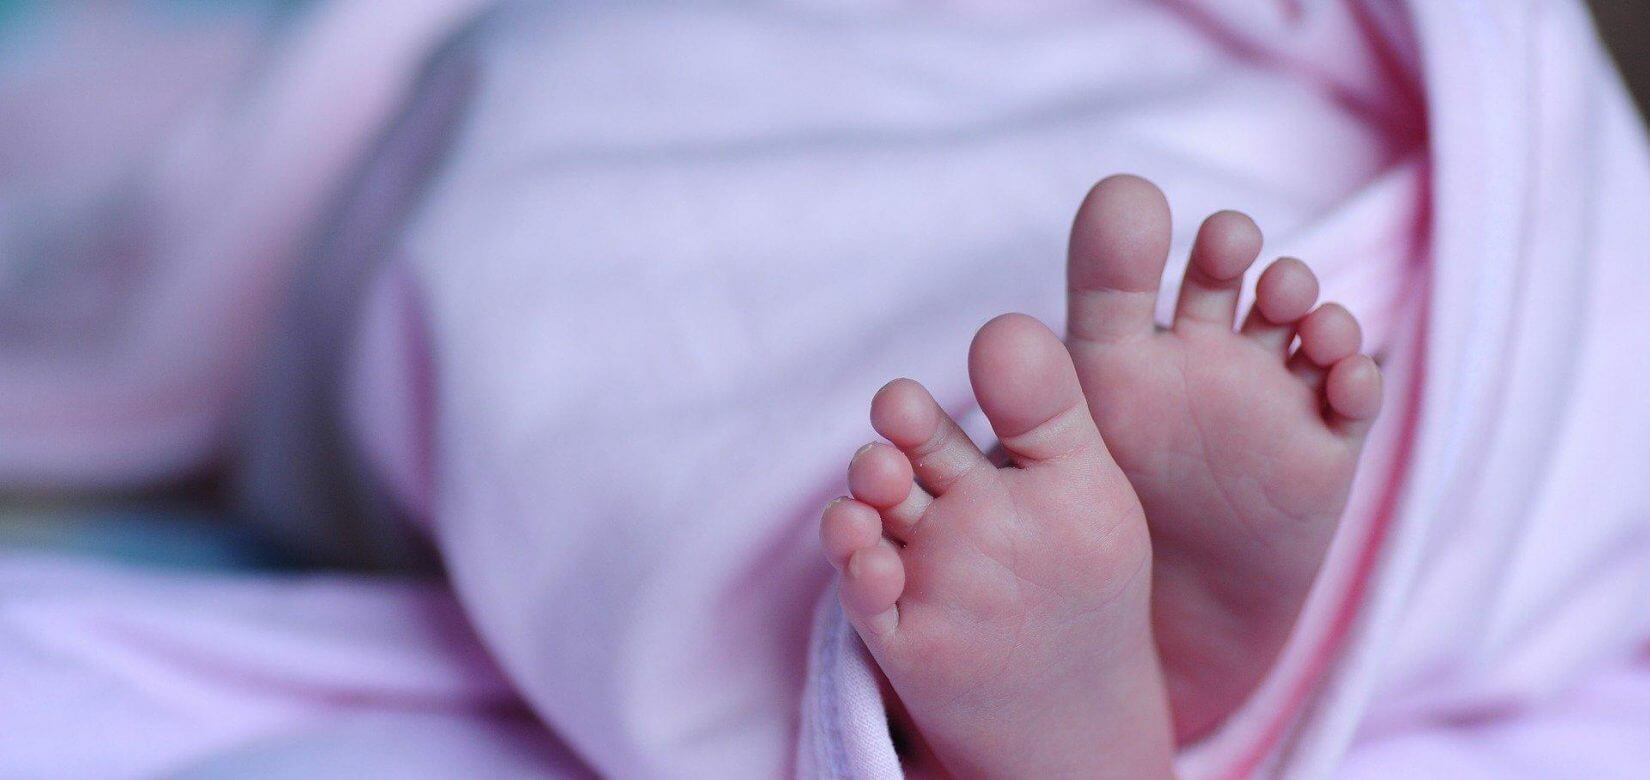 Πέθανε μωρό 5,5 μηνών από κορονοϊό - Δωρίζουν τα όργανα οι γονείς